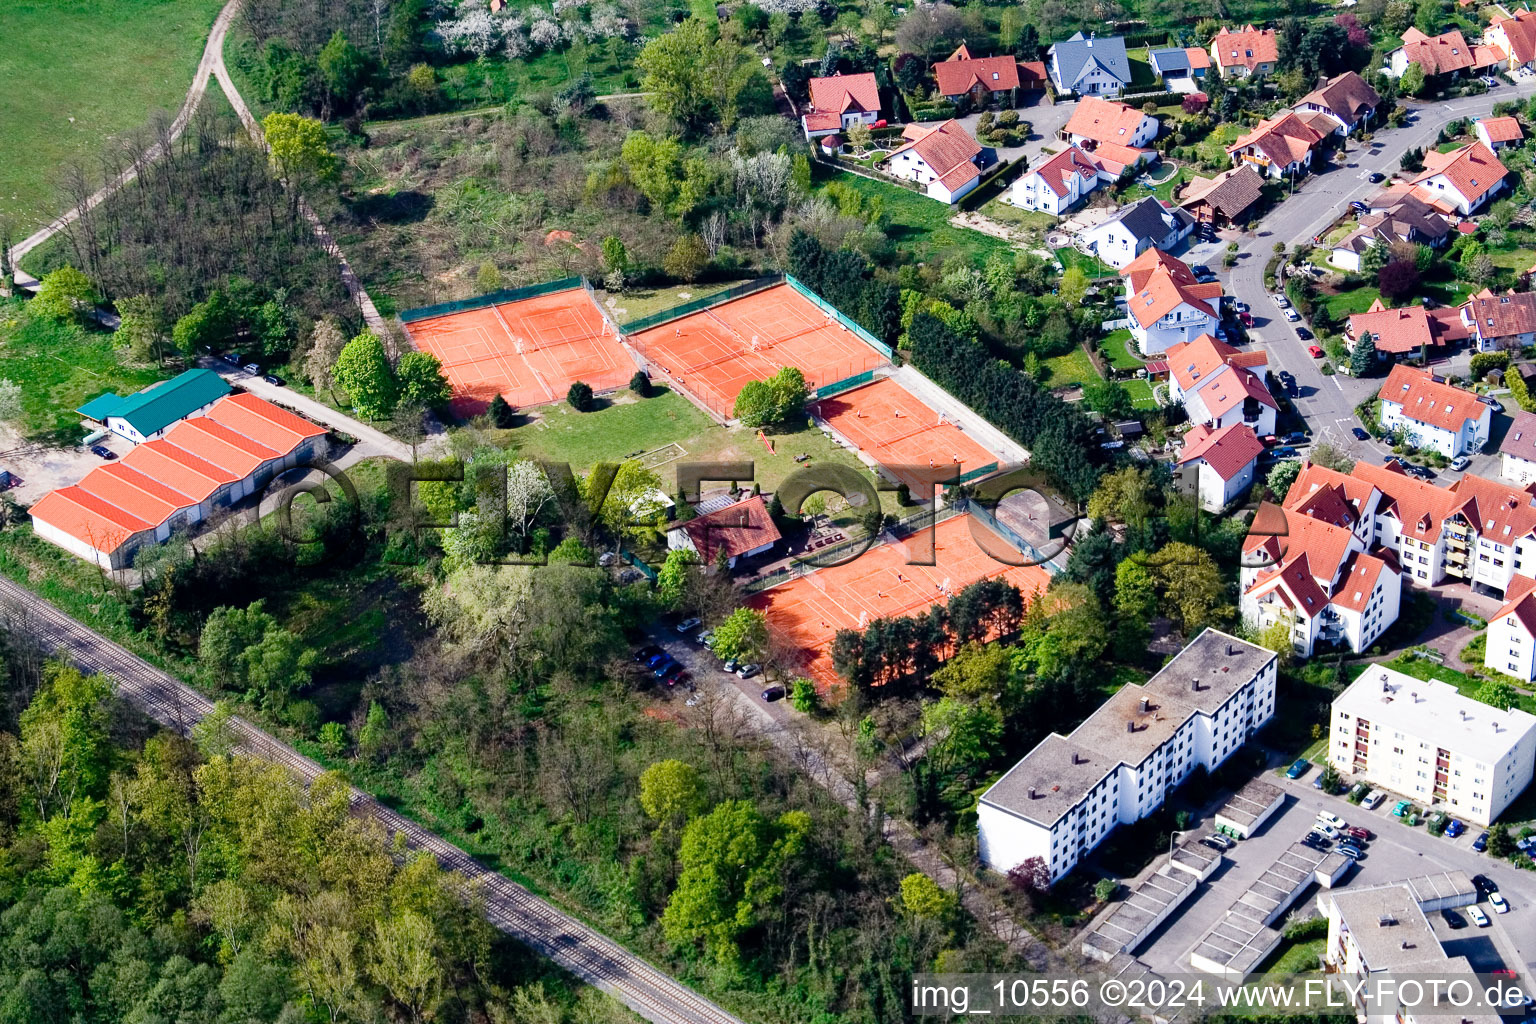 Club de tennis à Jockgrim dans le département Rhénanie-Palatinat, Allemagne vue du ciel